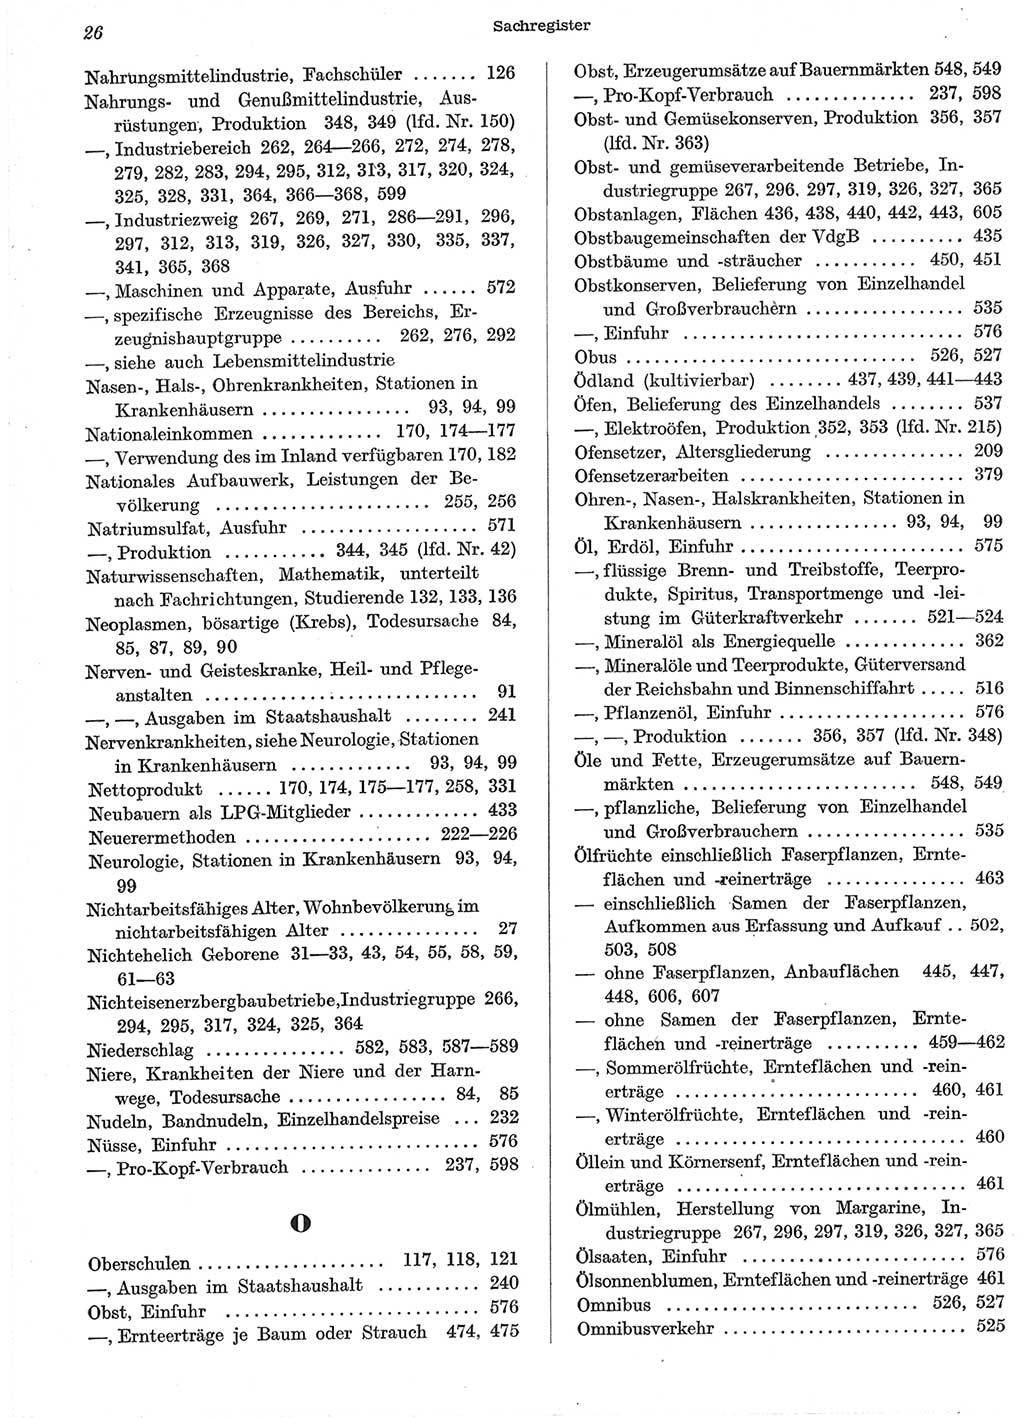 Statistisches Jahrbuch der Deutschen Demokratischen Republik (DDR) 1958, Seite 26 (Stat. Jb. DDR 1958, S. 26)